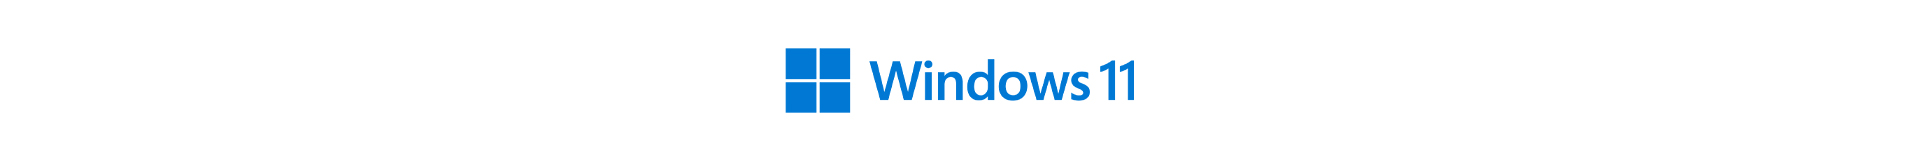 Windows 11 Devices 08.10.w11 Logo